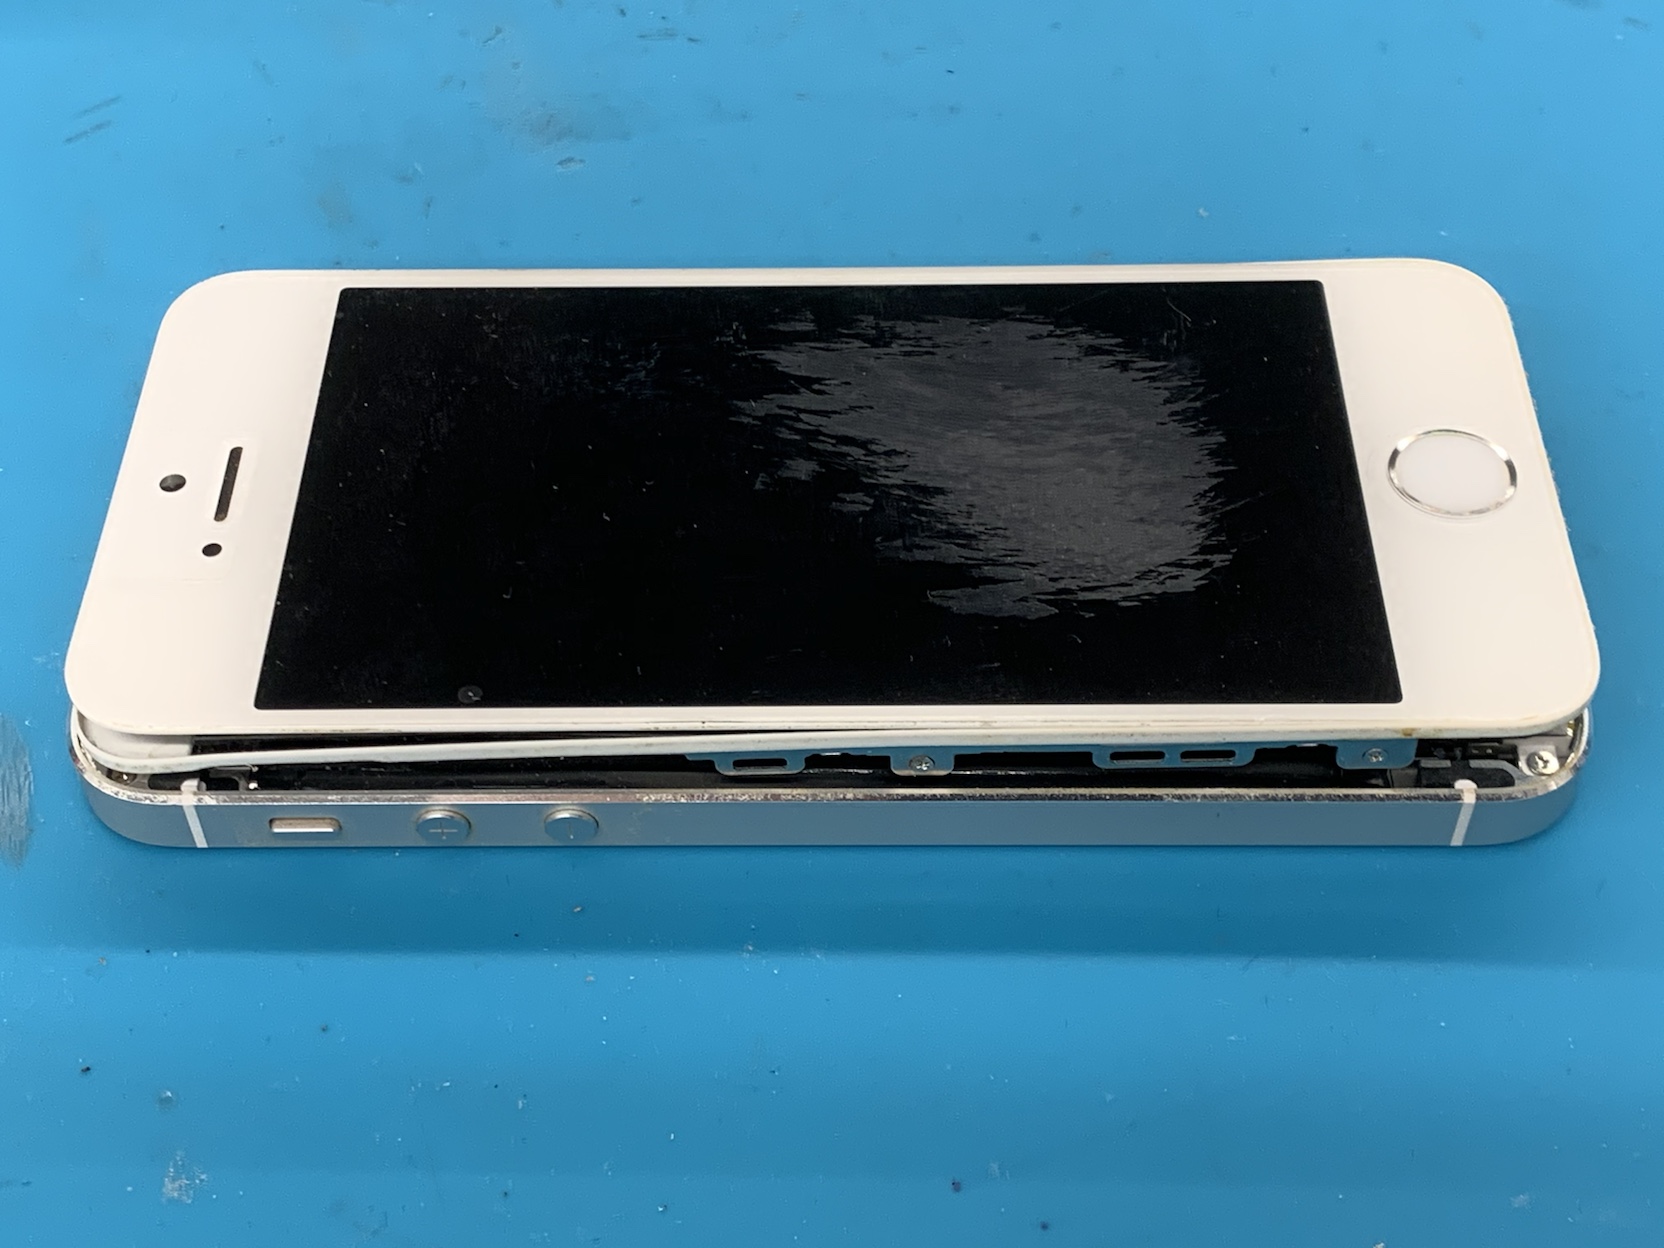 Iphone 5sバッテリー膨張と画面交換 即日修理承ります Tsutaya北千住店 スマホ修理王